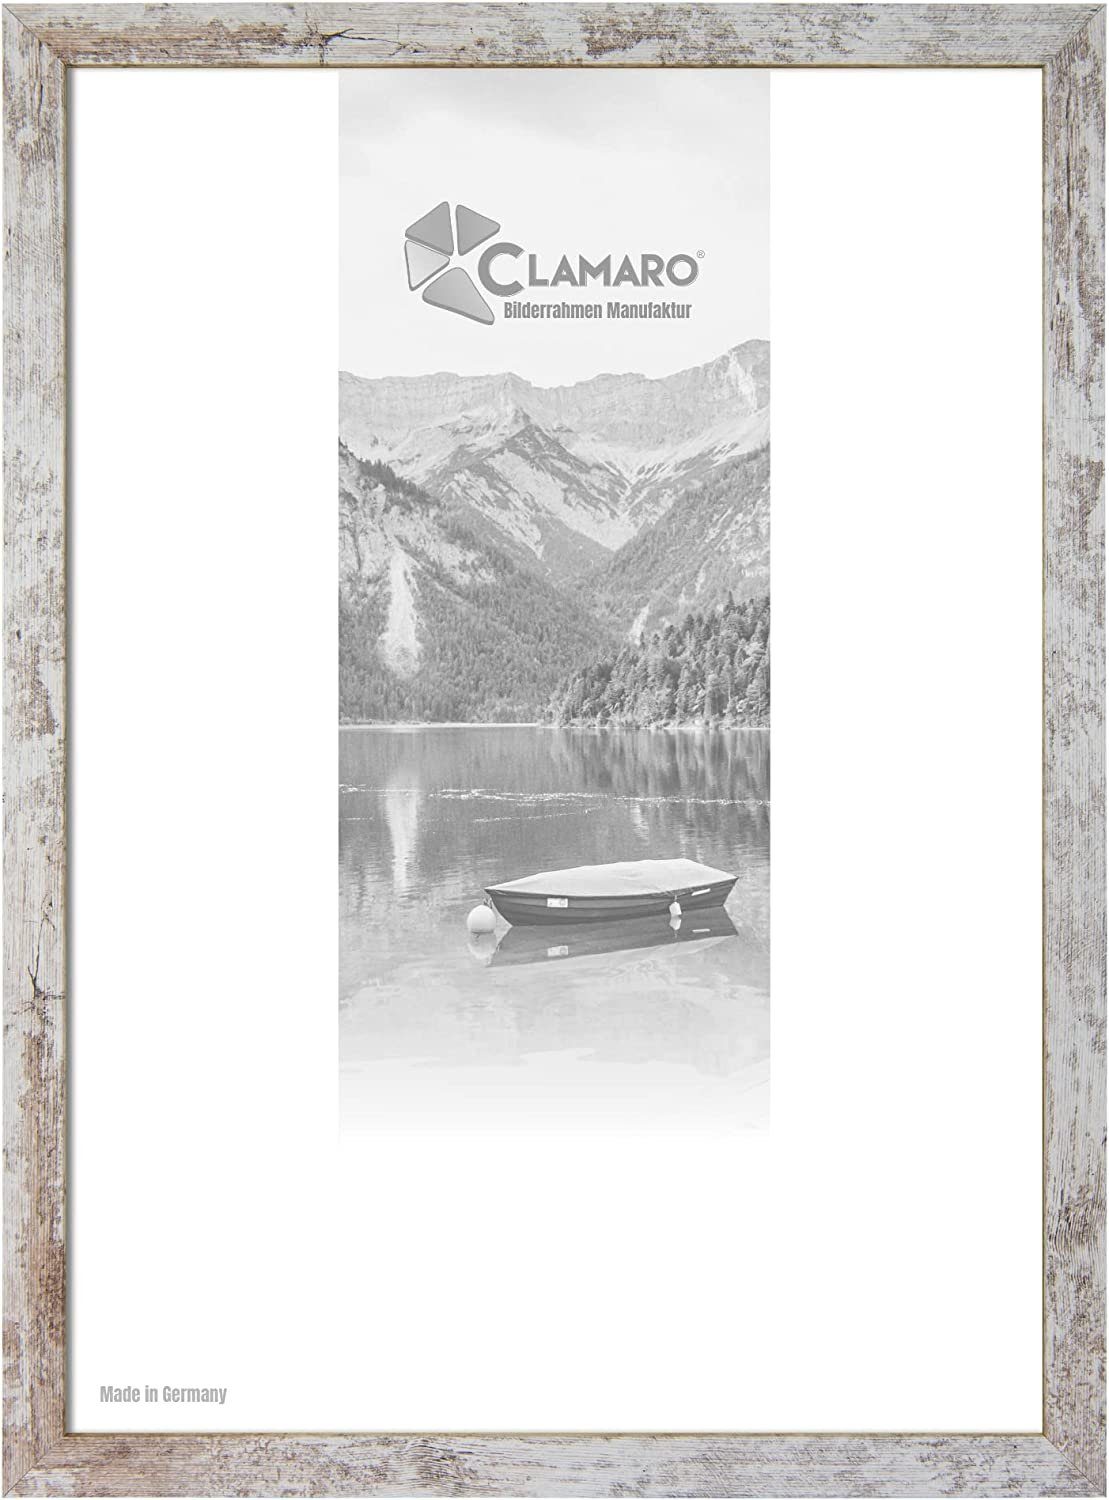 Clamaro Bilderrahmen Bilderrahmen Vintage Weiss CLAMARO Collage nach Maß FSC® Holz Modern eckig M3016 30x40 in Vintage Weiss